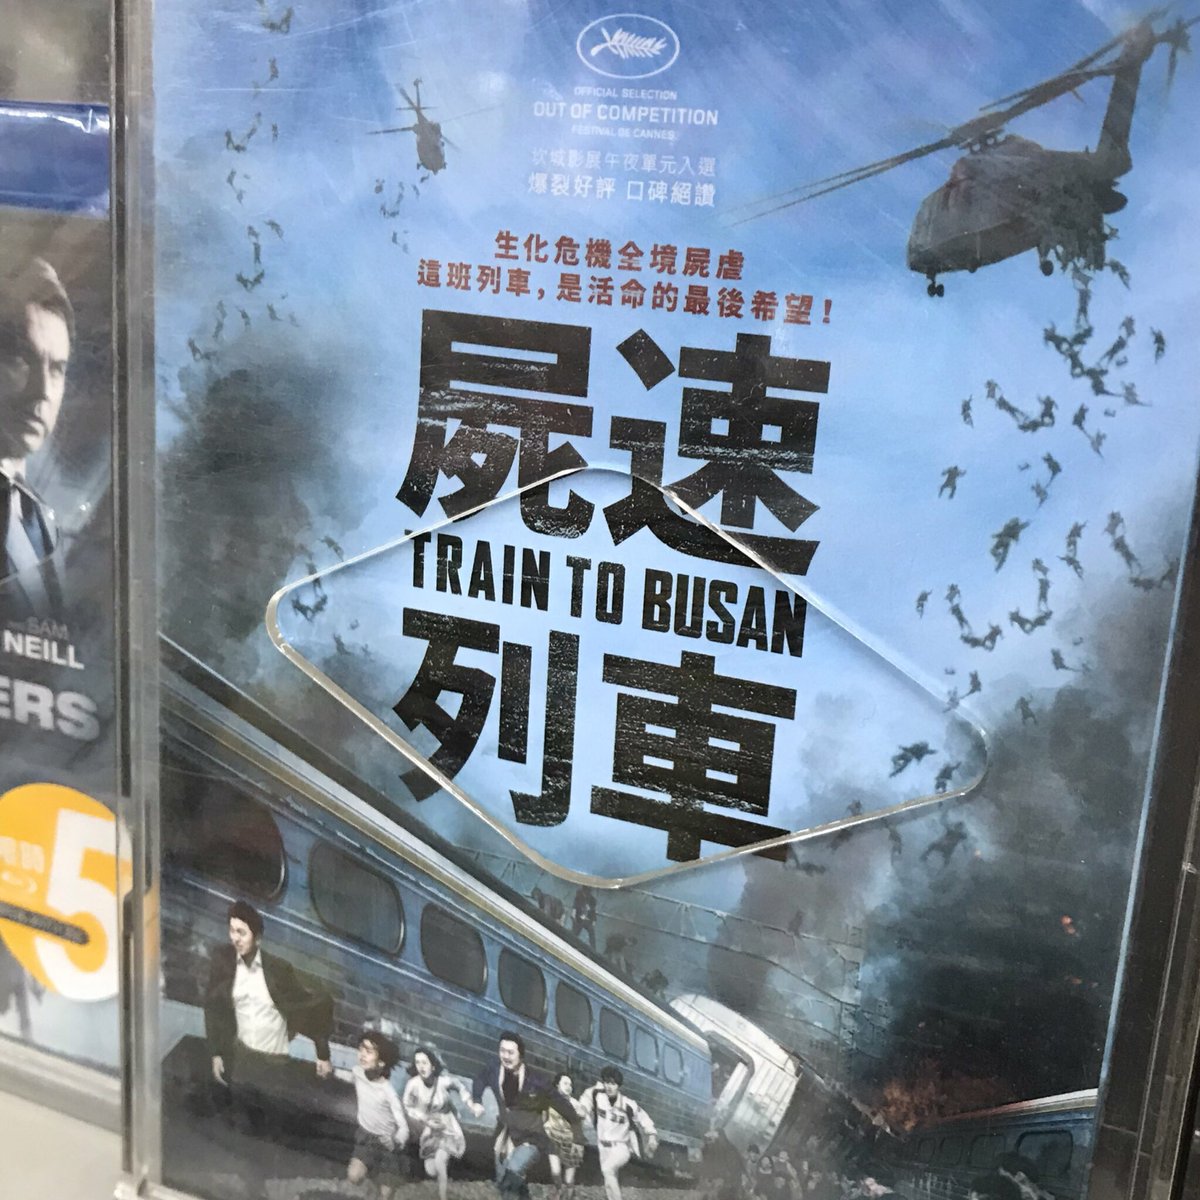 台湾で見つけたイカした翻訳タイトル。
#映画の日 